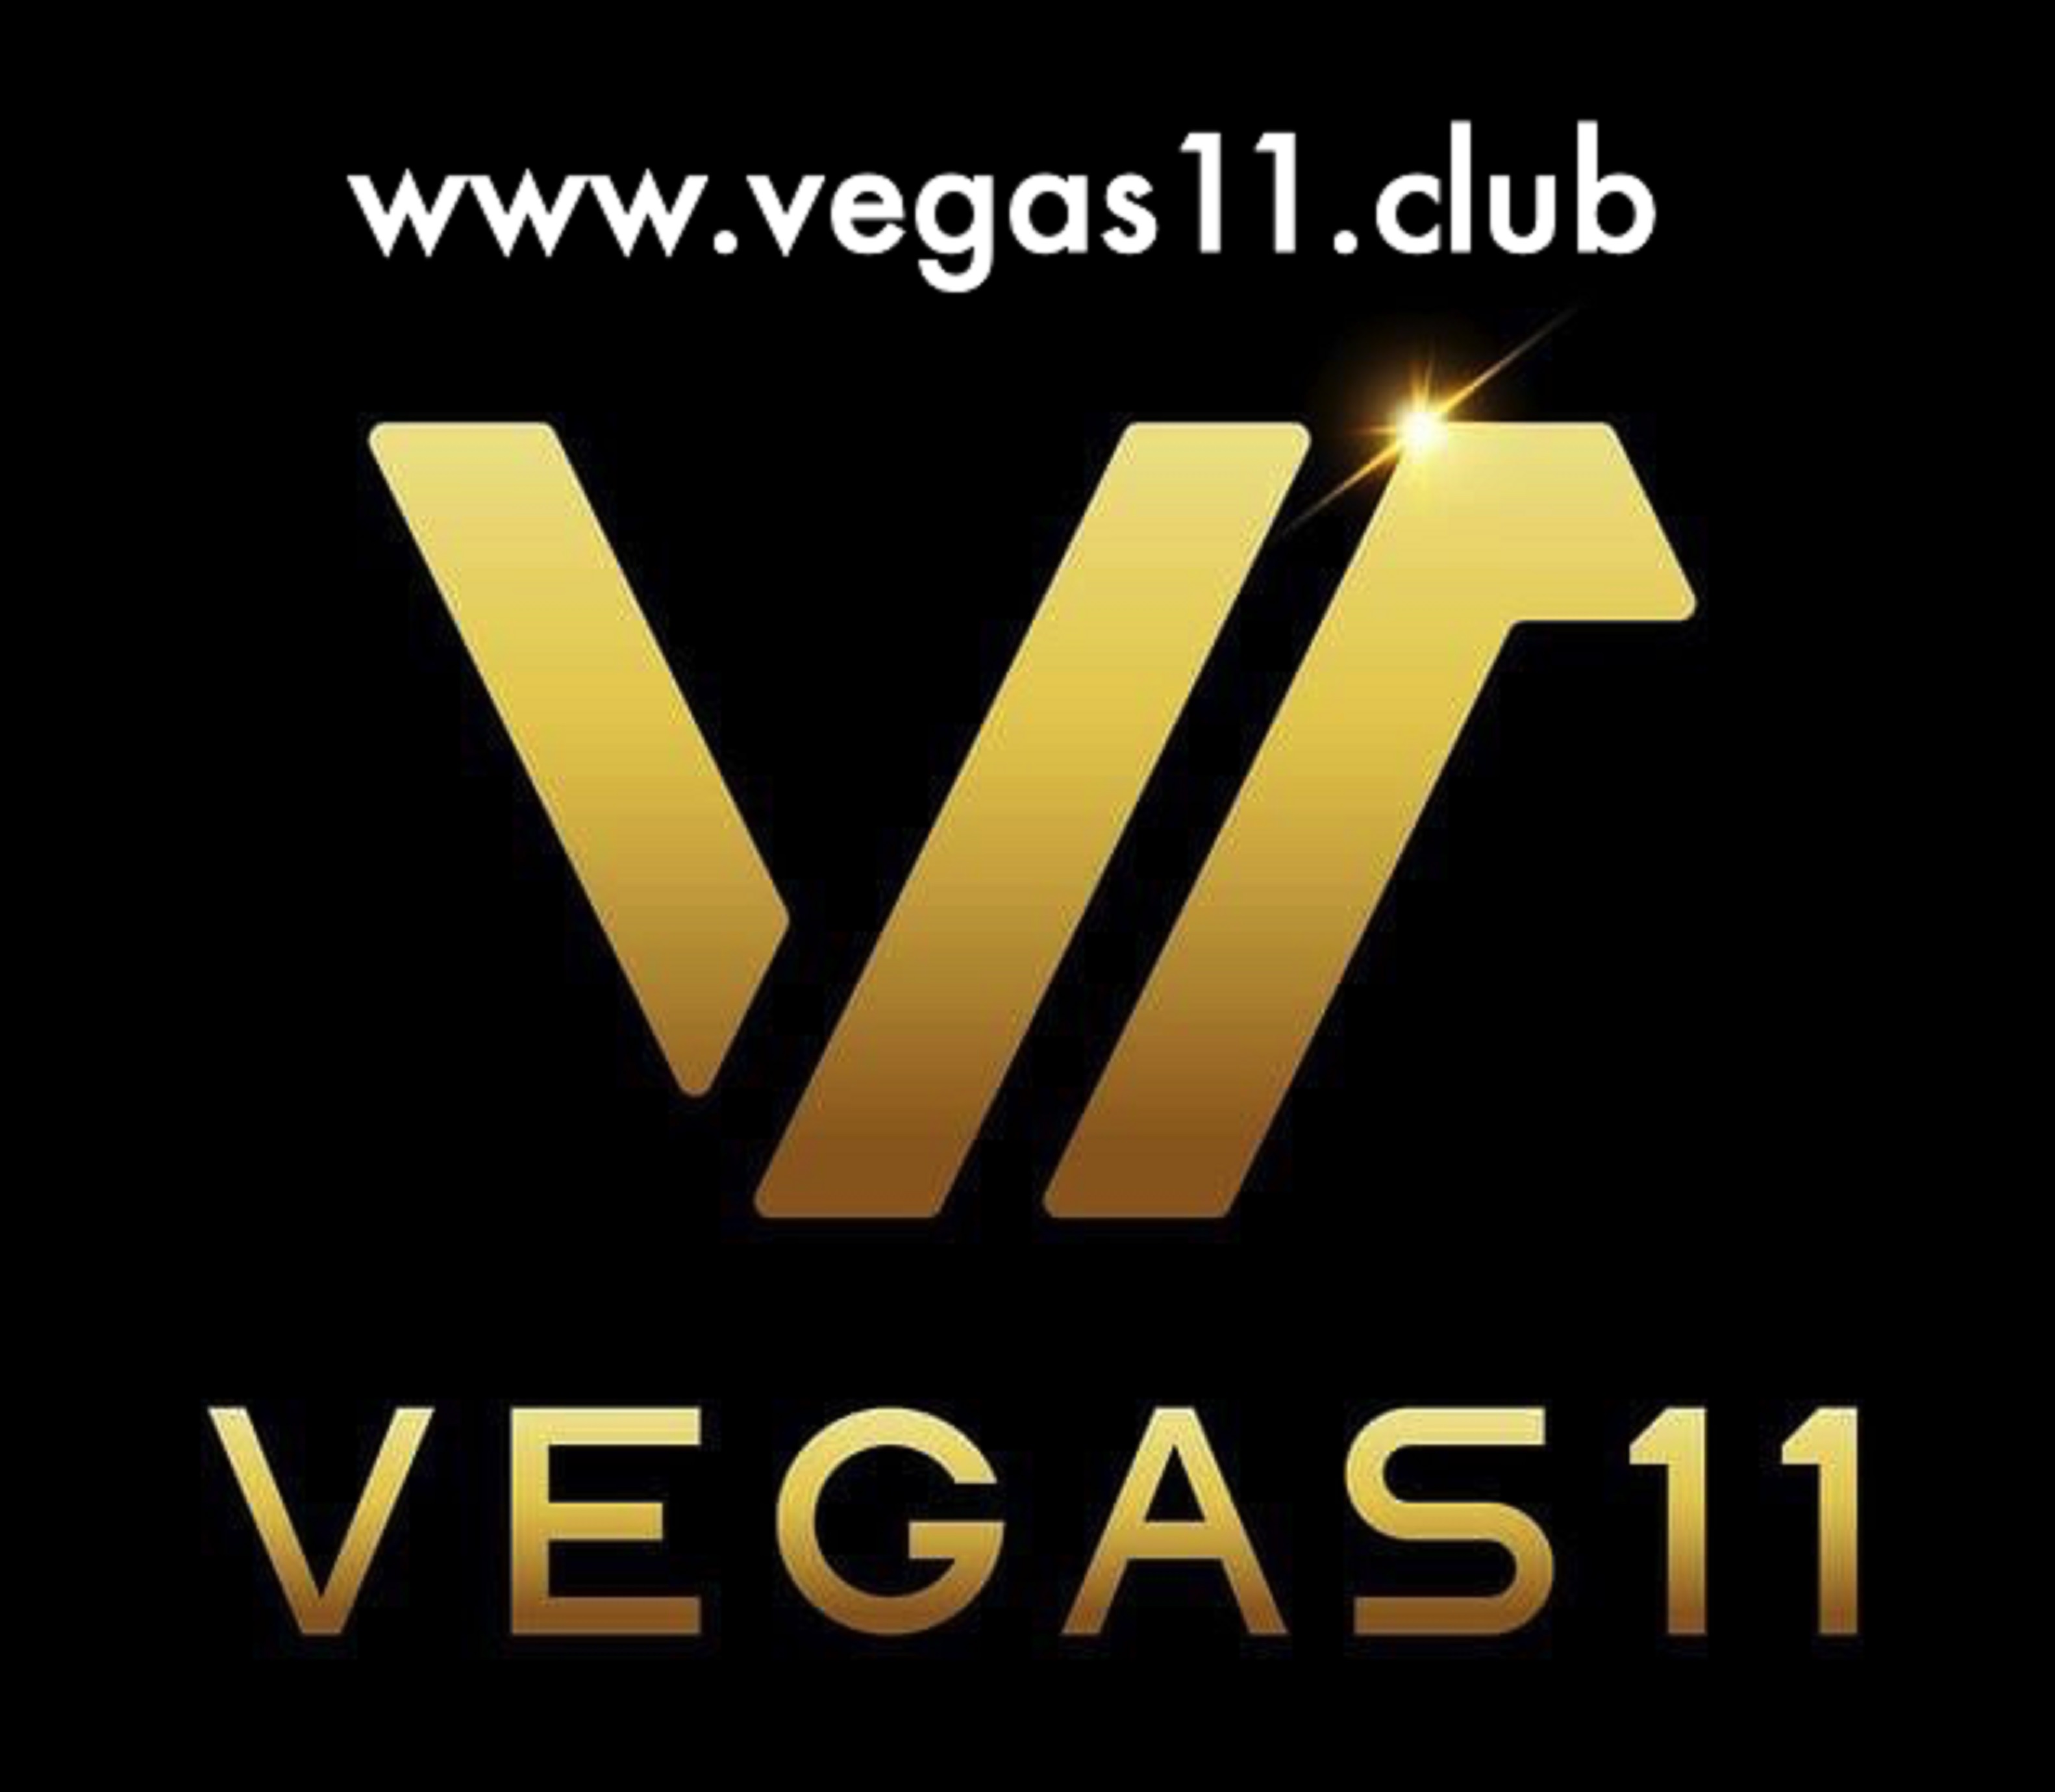 Vegas11 Online Casino in India